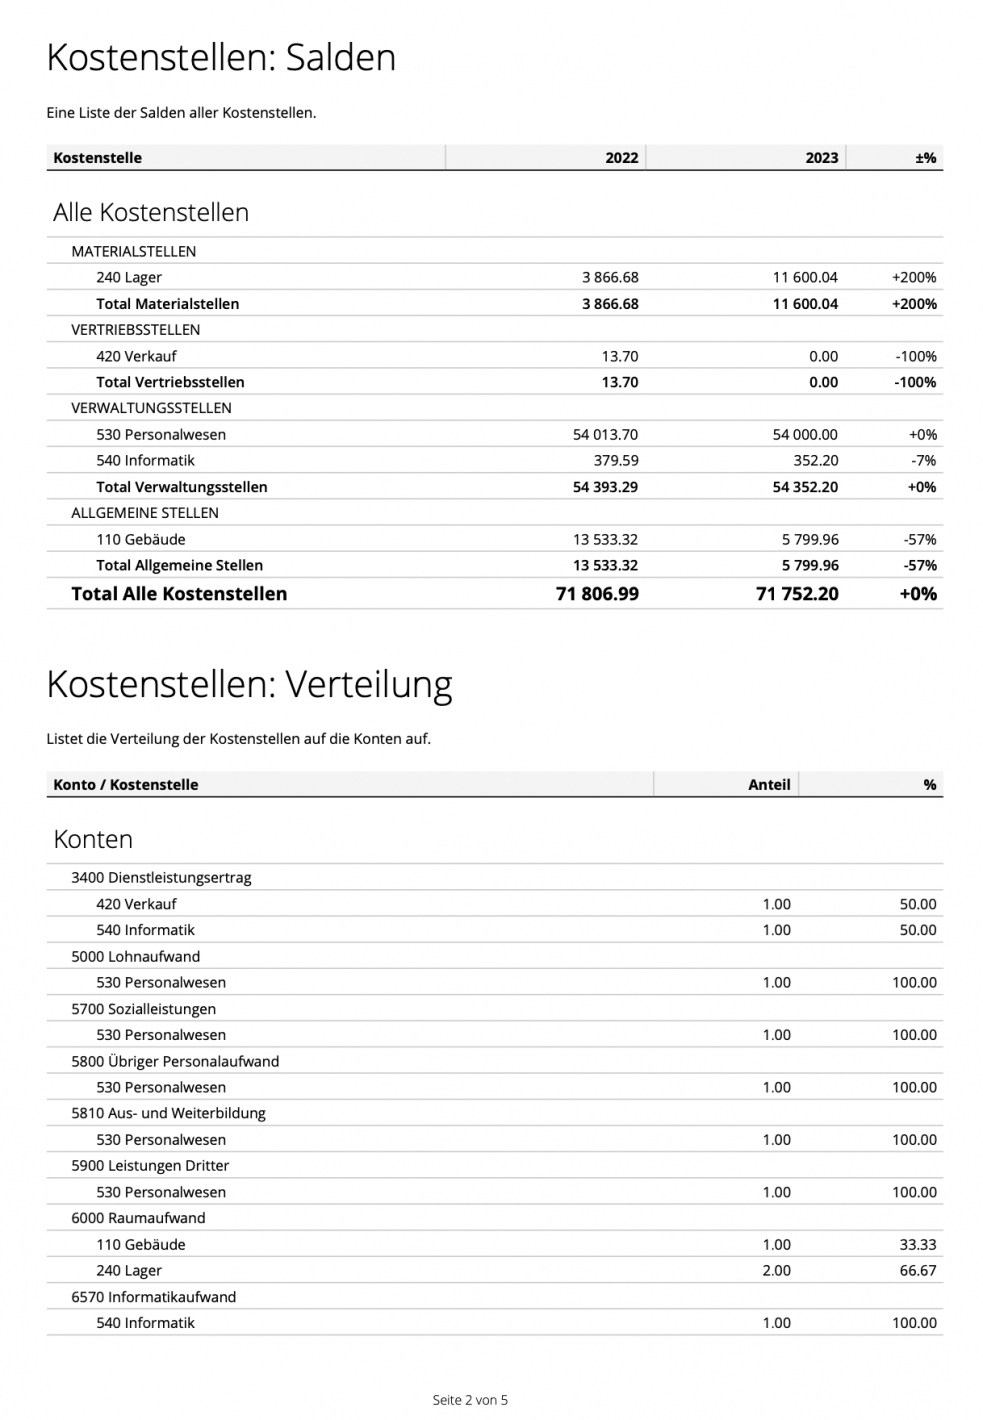 Screenshot Kostenstellen Bericht mit Salden und Verteilung